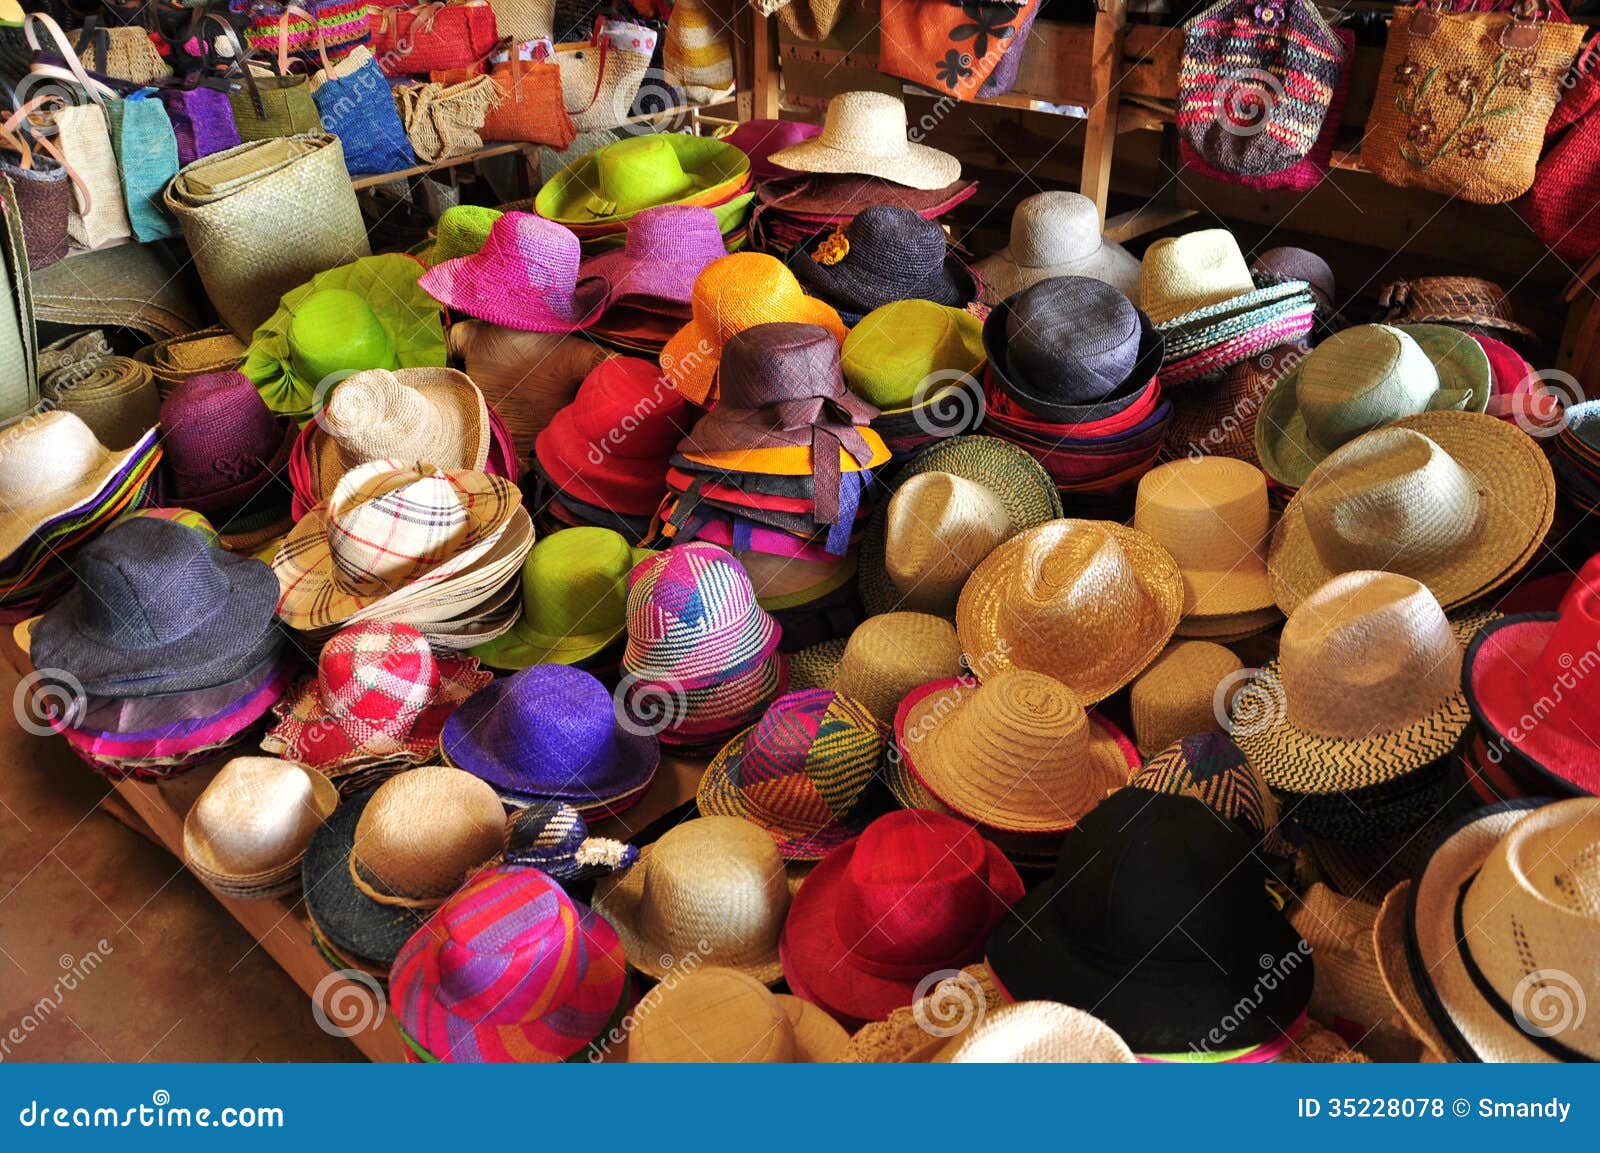 colorful market madagascar